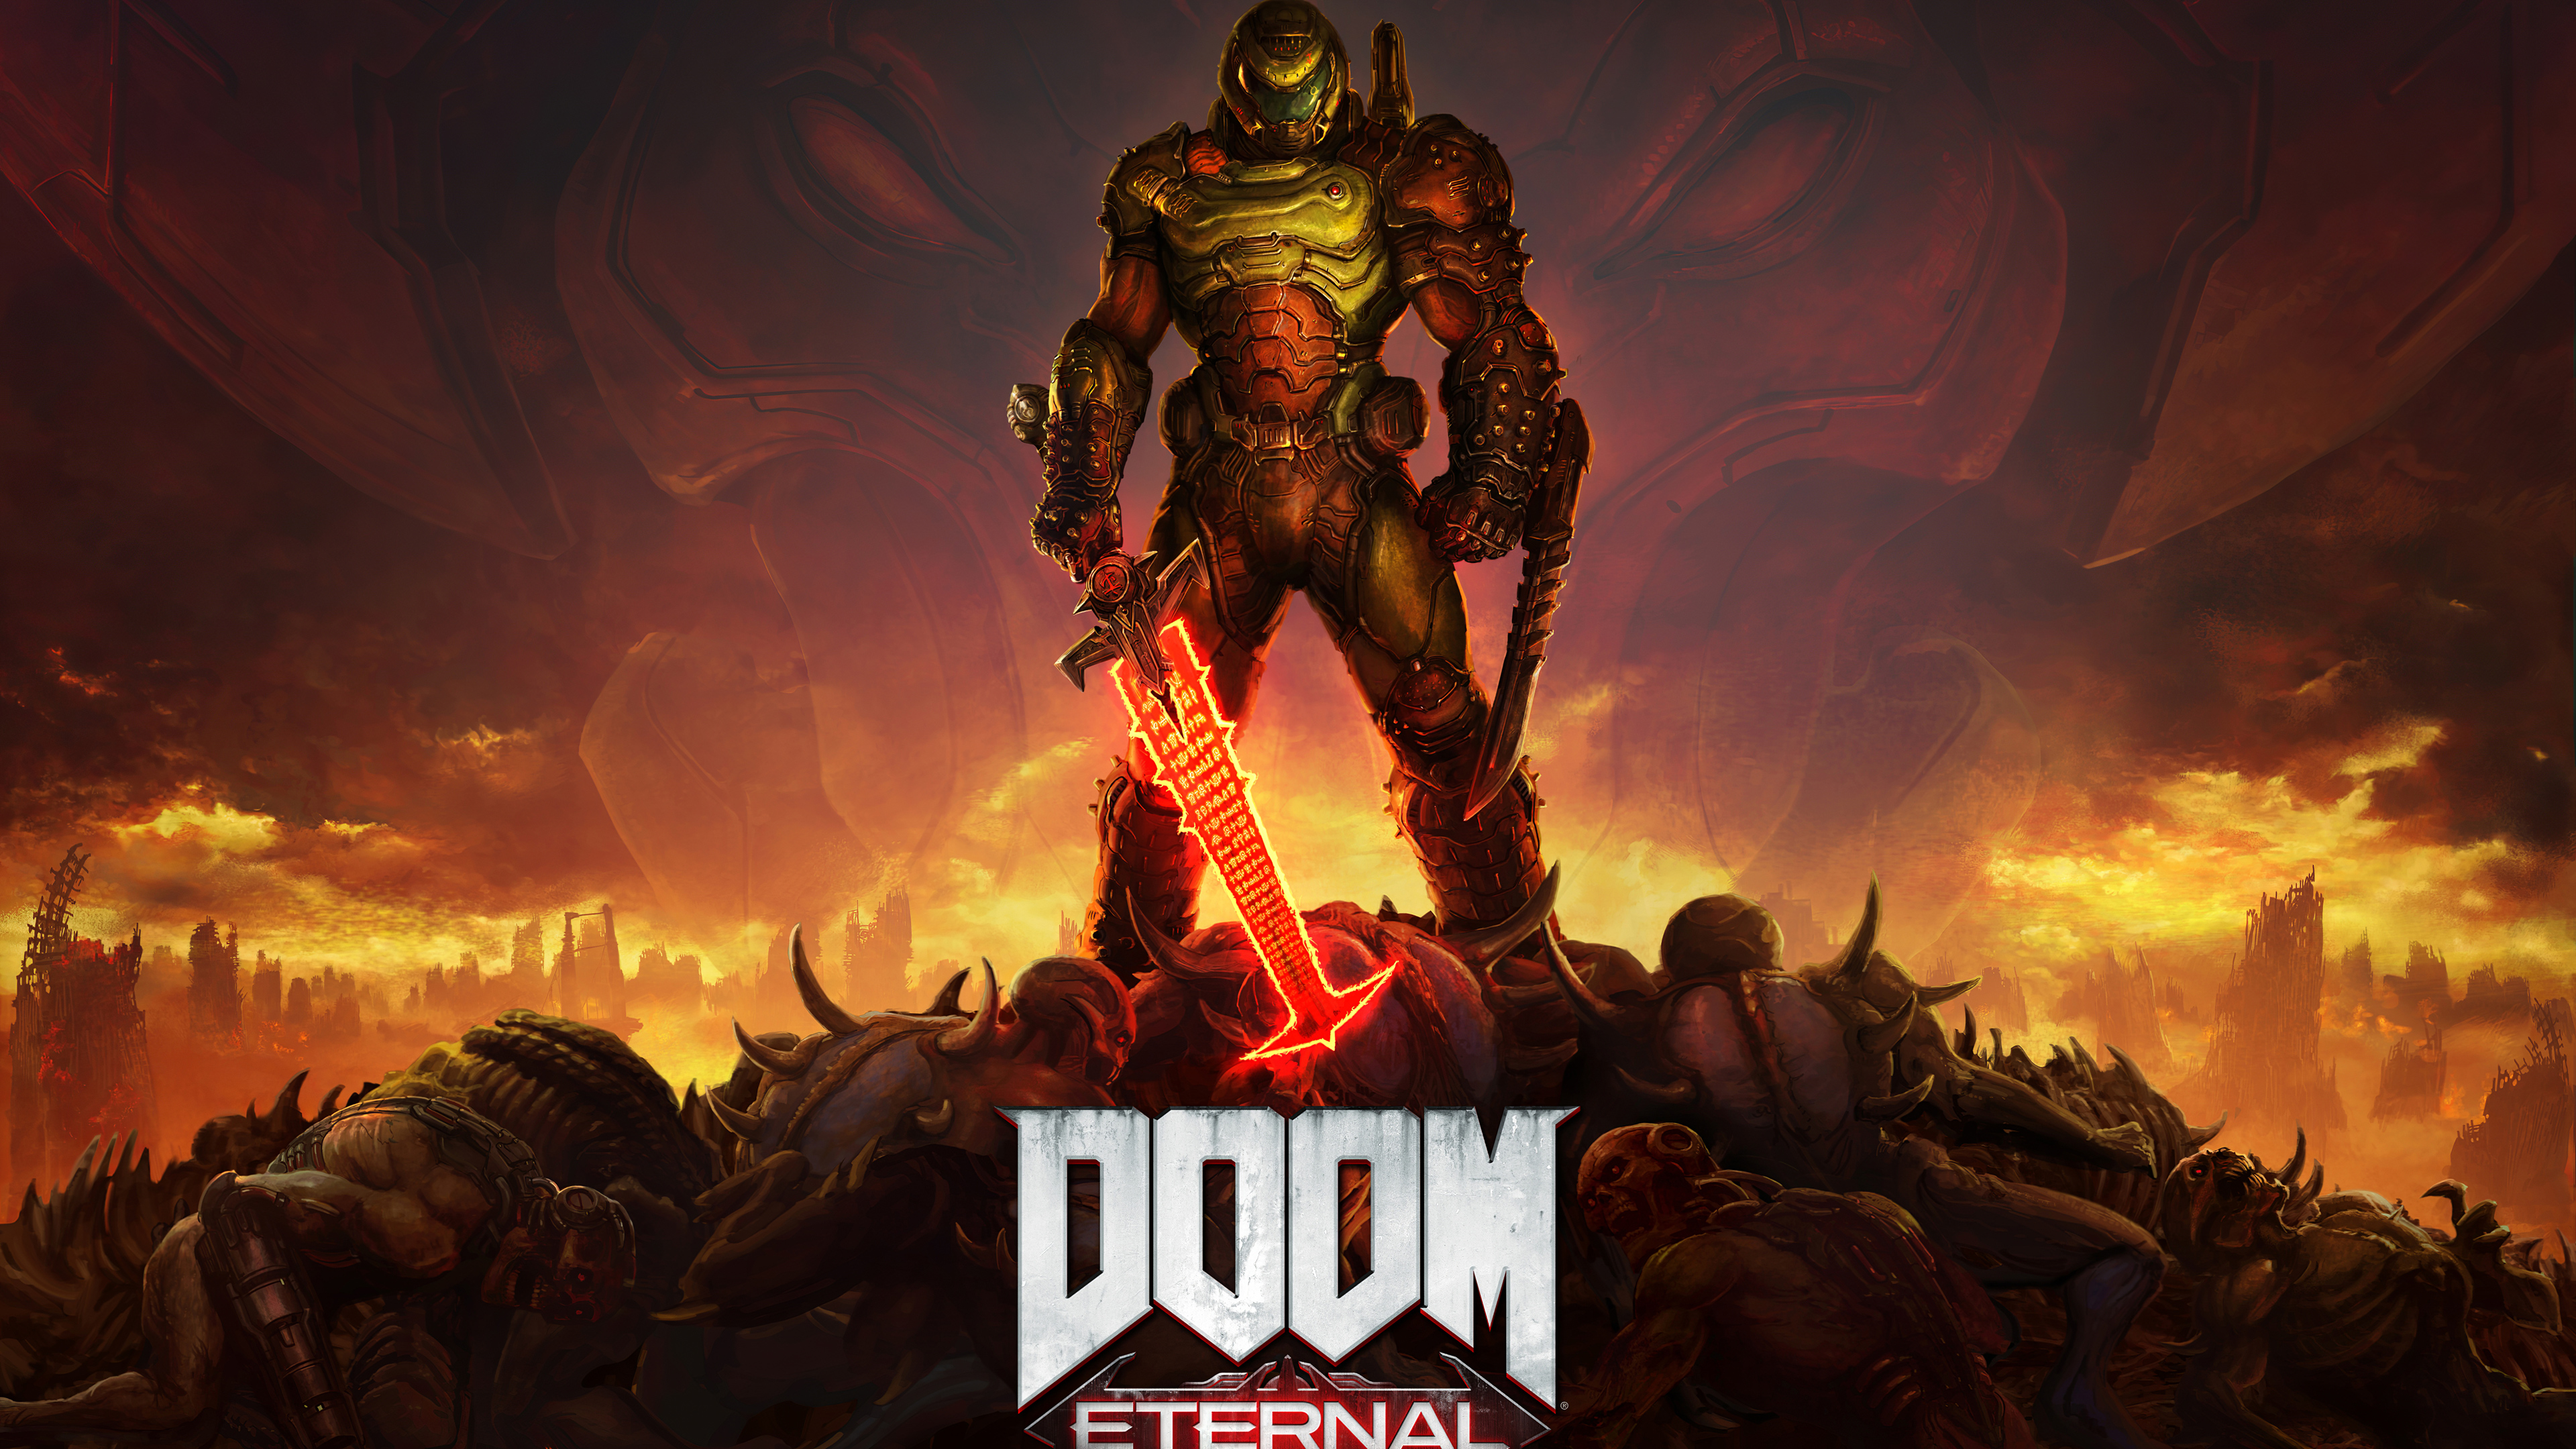 Doom Eternal 4k 2020 Wallpaperhd Games Wallpapers4k Wallpapersimagesbackgroundsphotos And